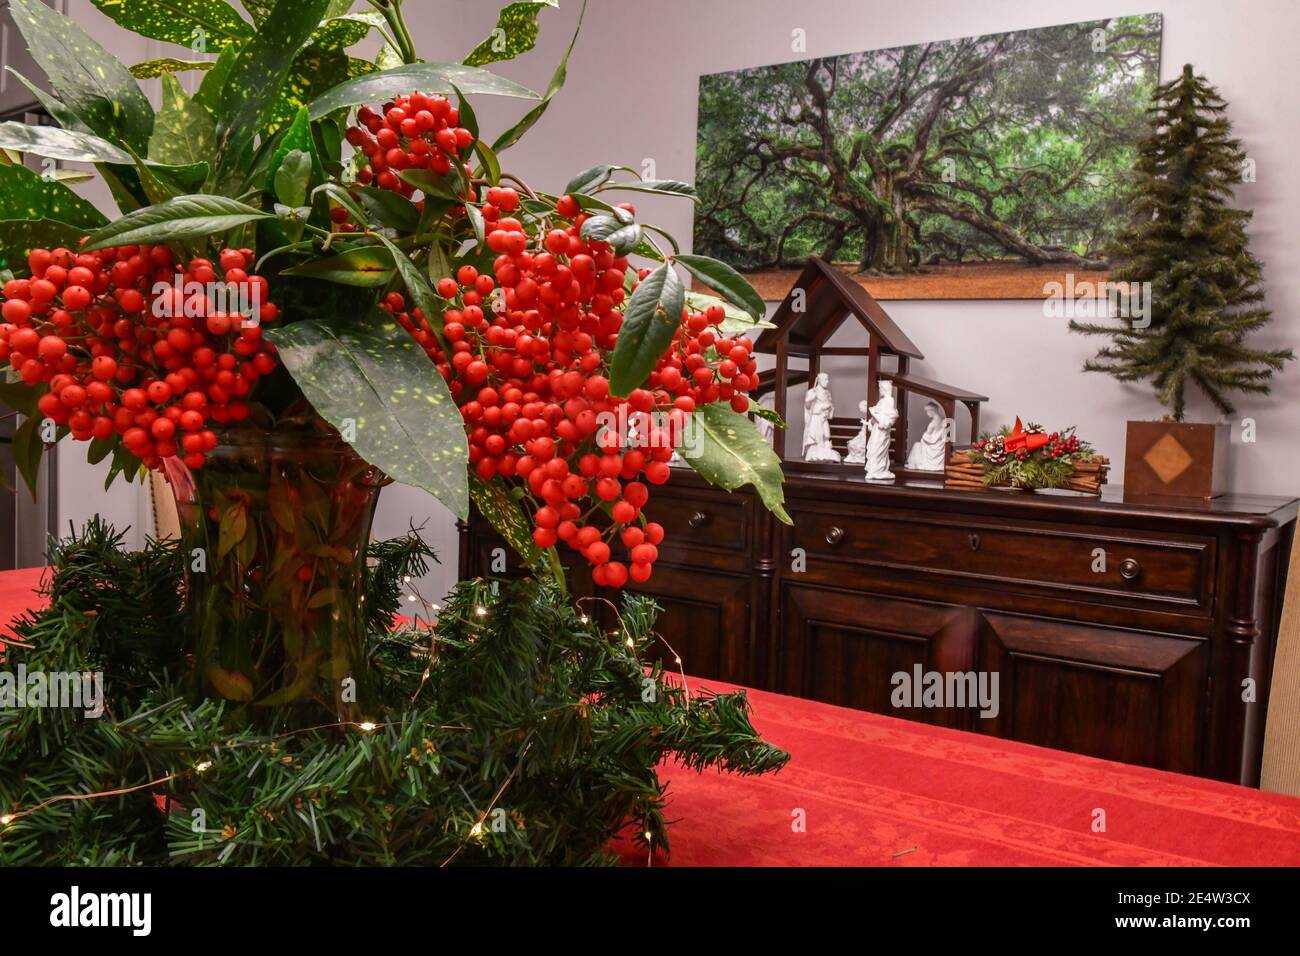 Weihnachtsschmuck aus himmlischem Bambus Nandina domestica - rote Beeren auf immergrünen Busch oder heiligem Bambus - Berberidaceae Familie Stockfoto